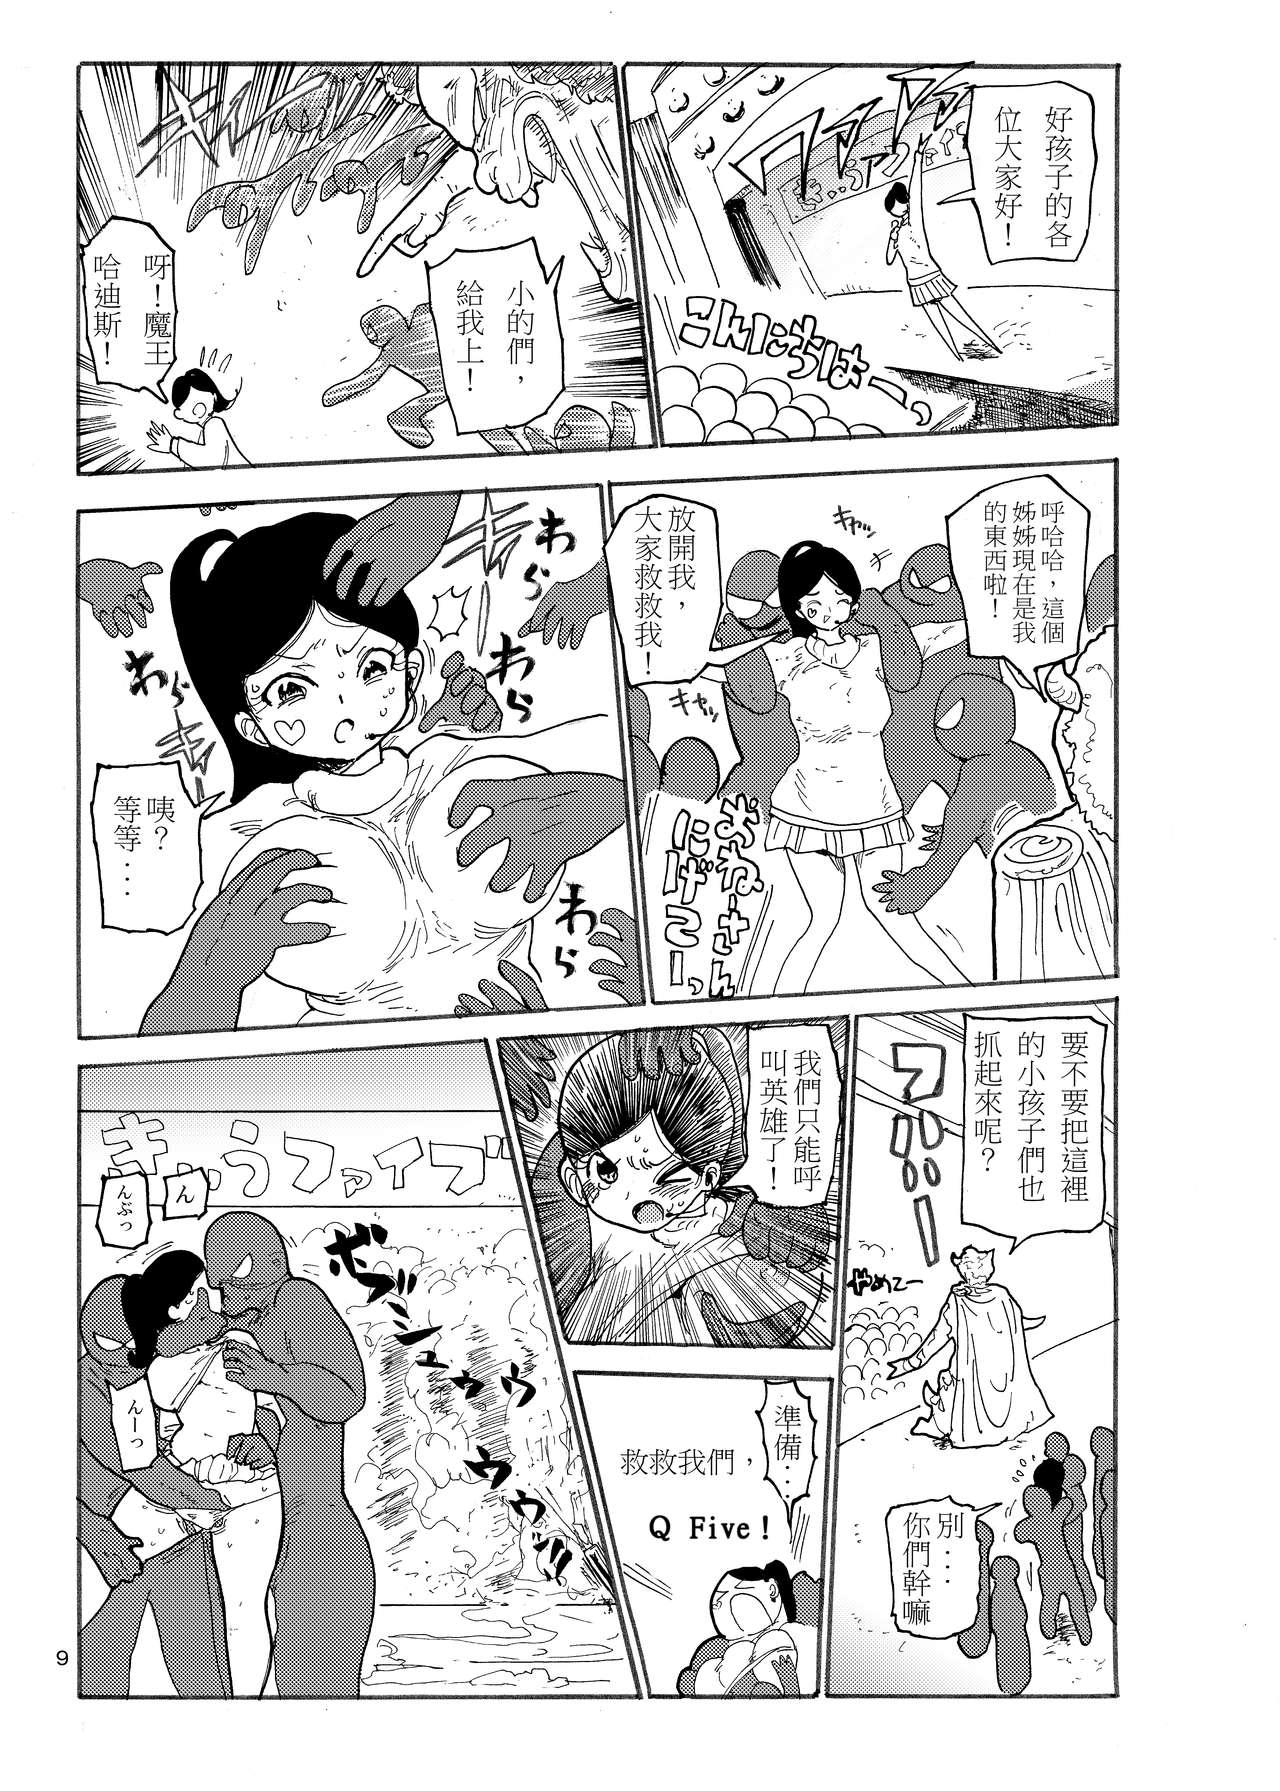 Best Blow Jobs Ever Fuyu ni mo Nandemo Chousa Shoujo no Doujinshi ga Deta? Wakarimashita Chousa Shimasu - Original Love - Page 9